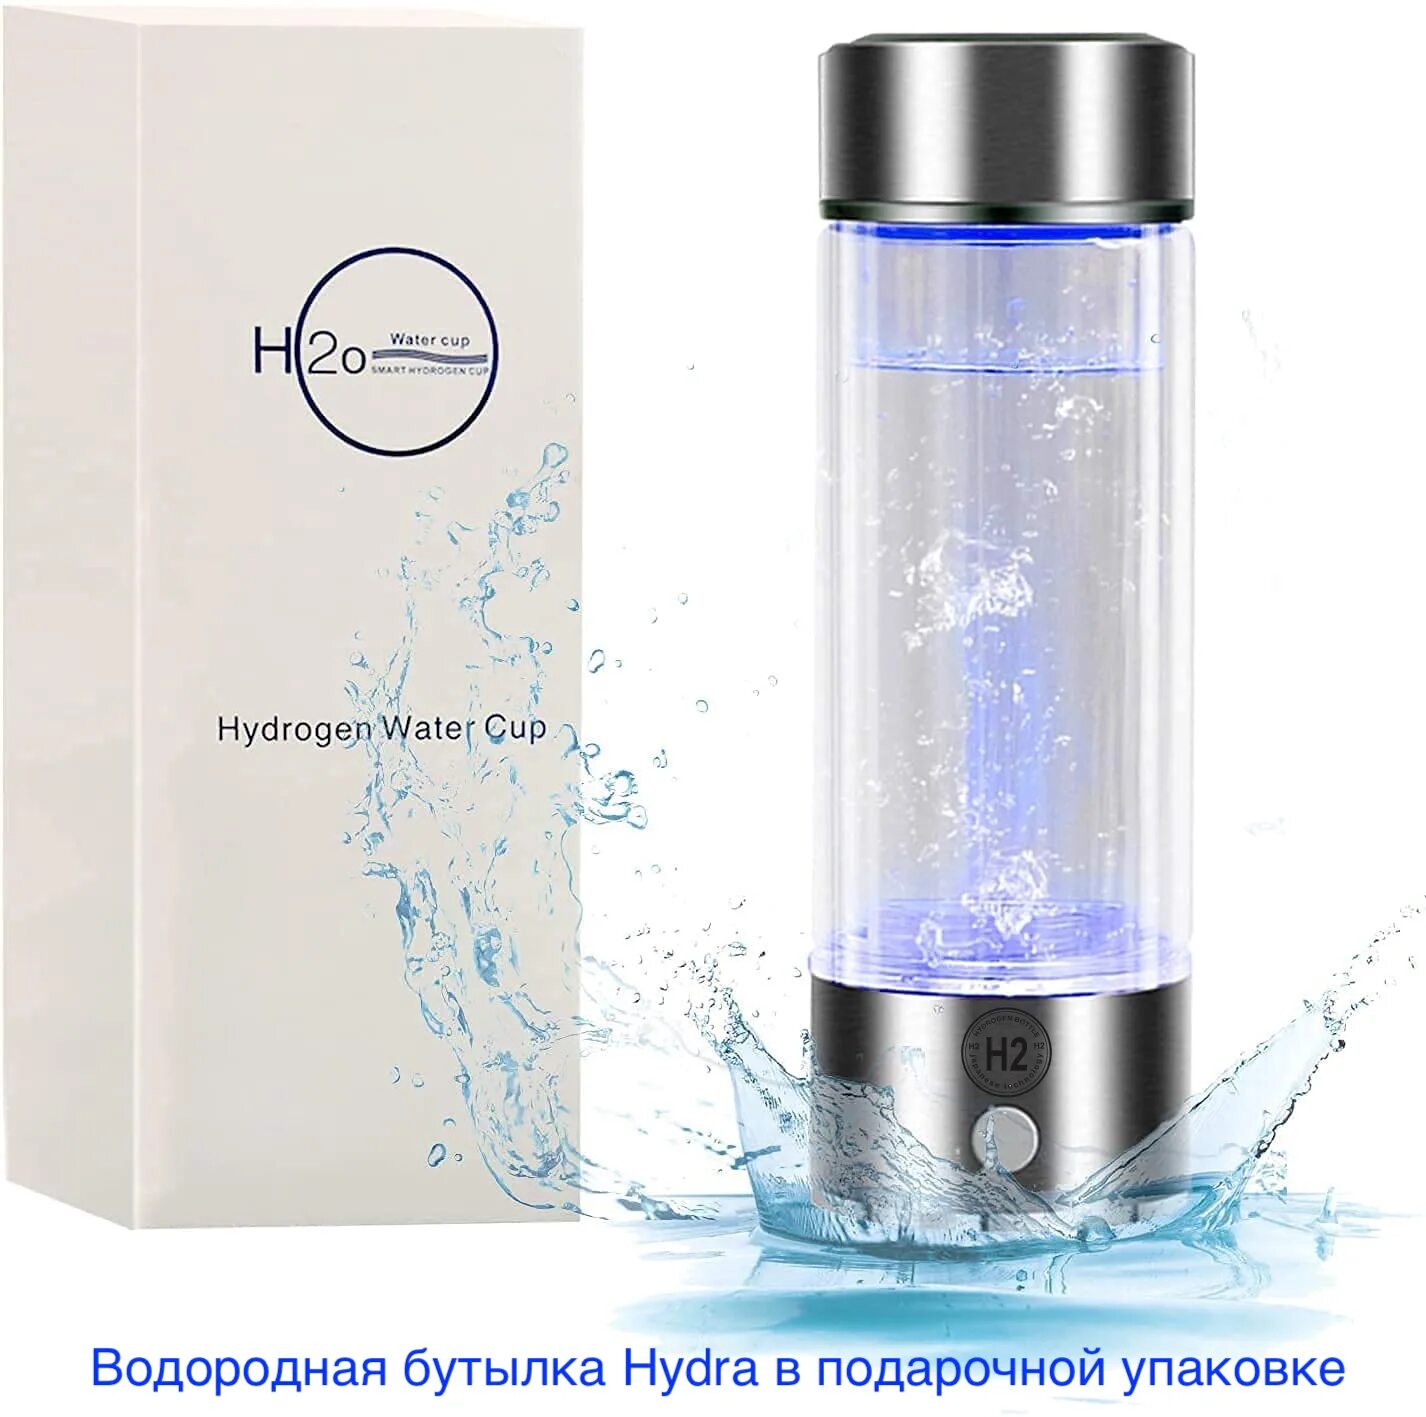 Водородная бутылка hydra. Генератор водородной воды. Hydra spe водородная бутылка. Водородная бутылка для воды Борк. Водородная бутылка генератор